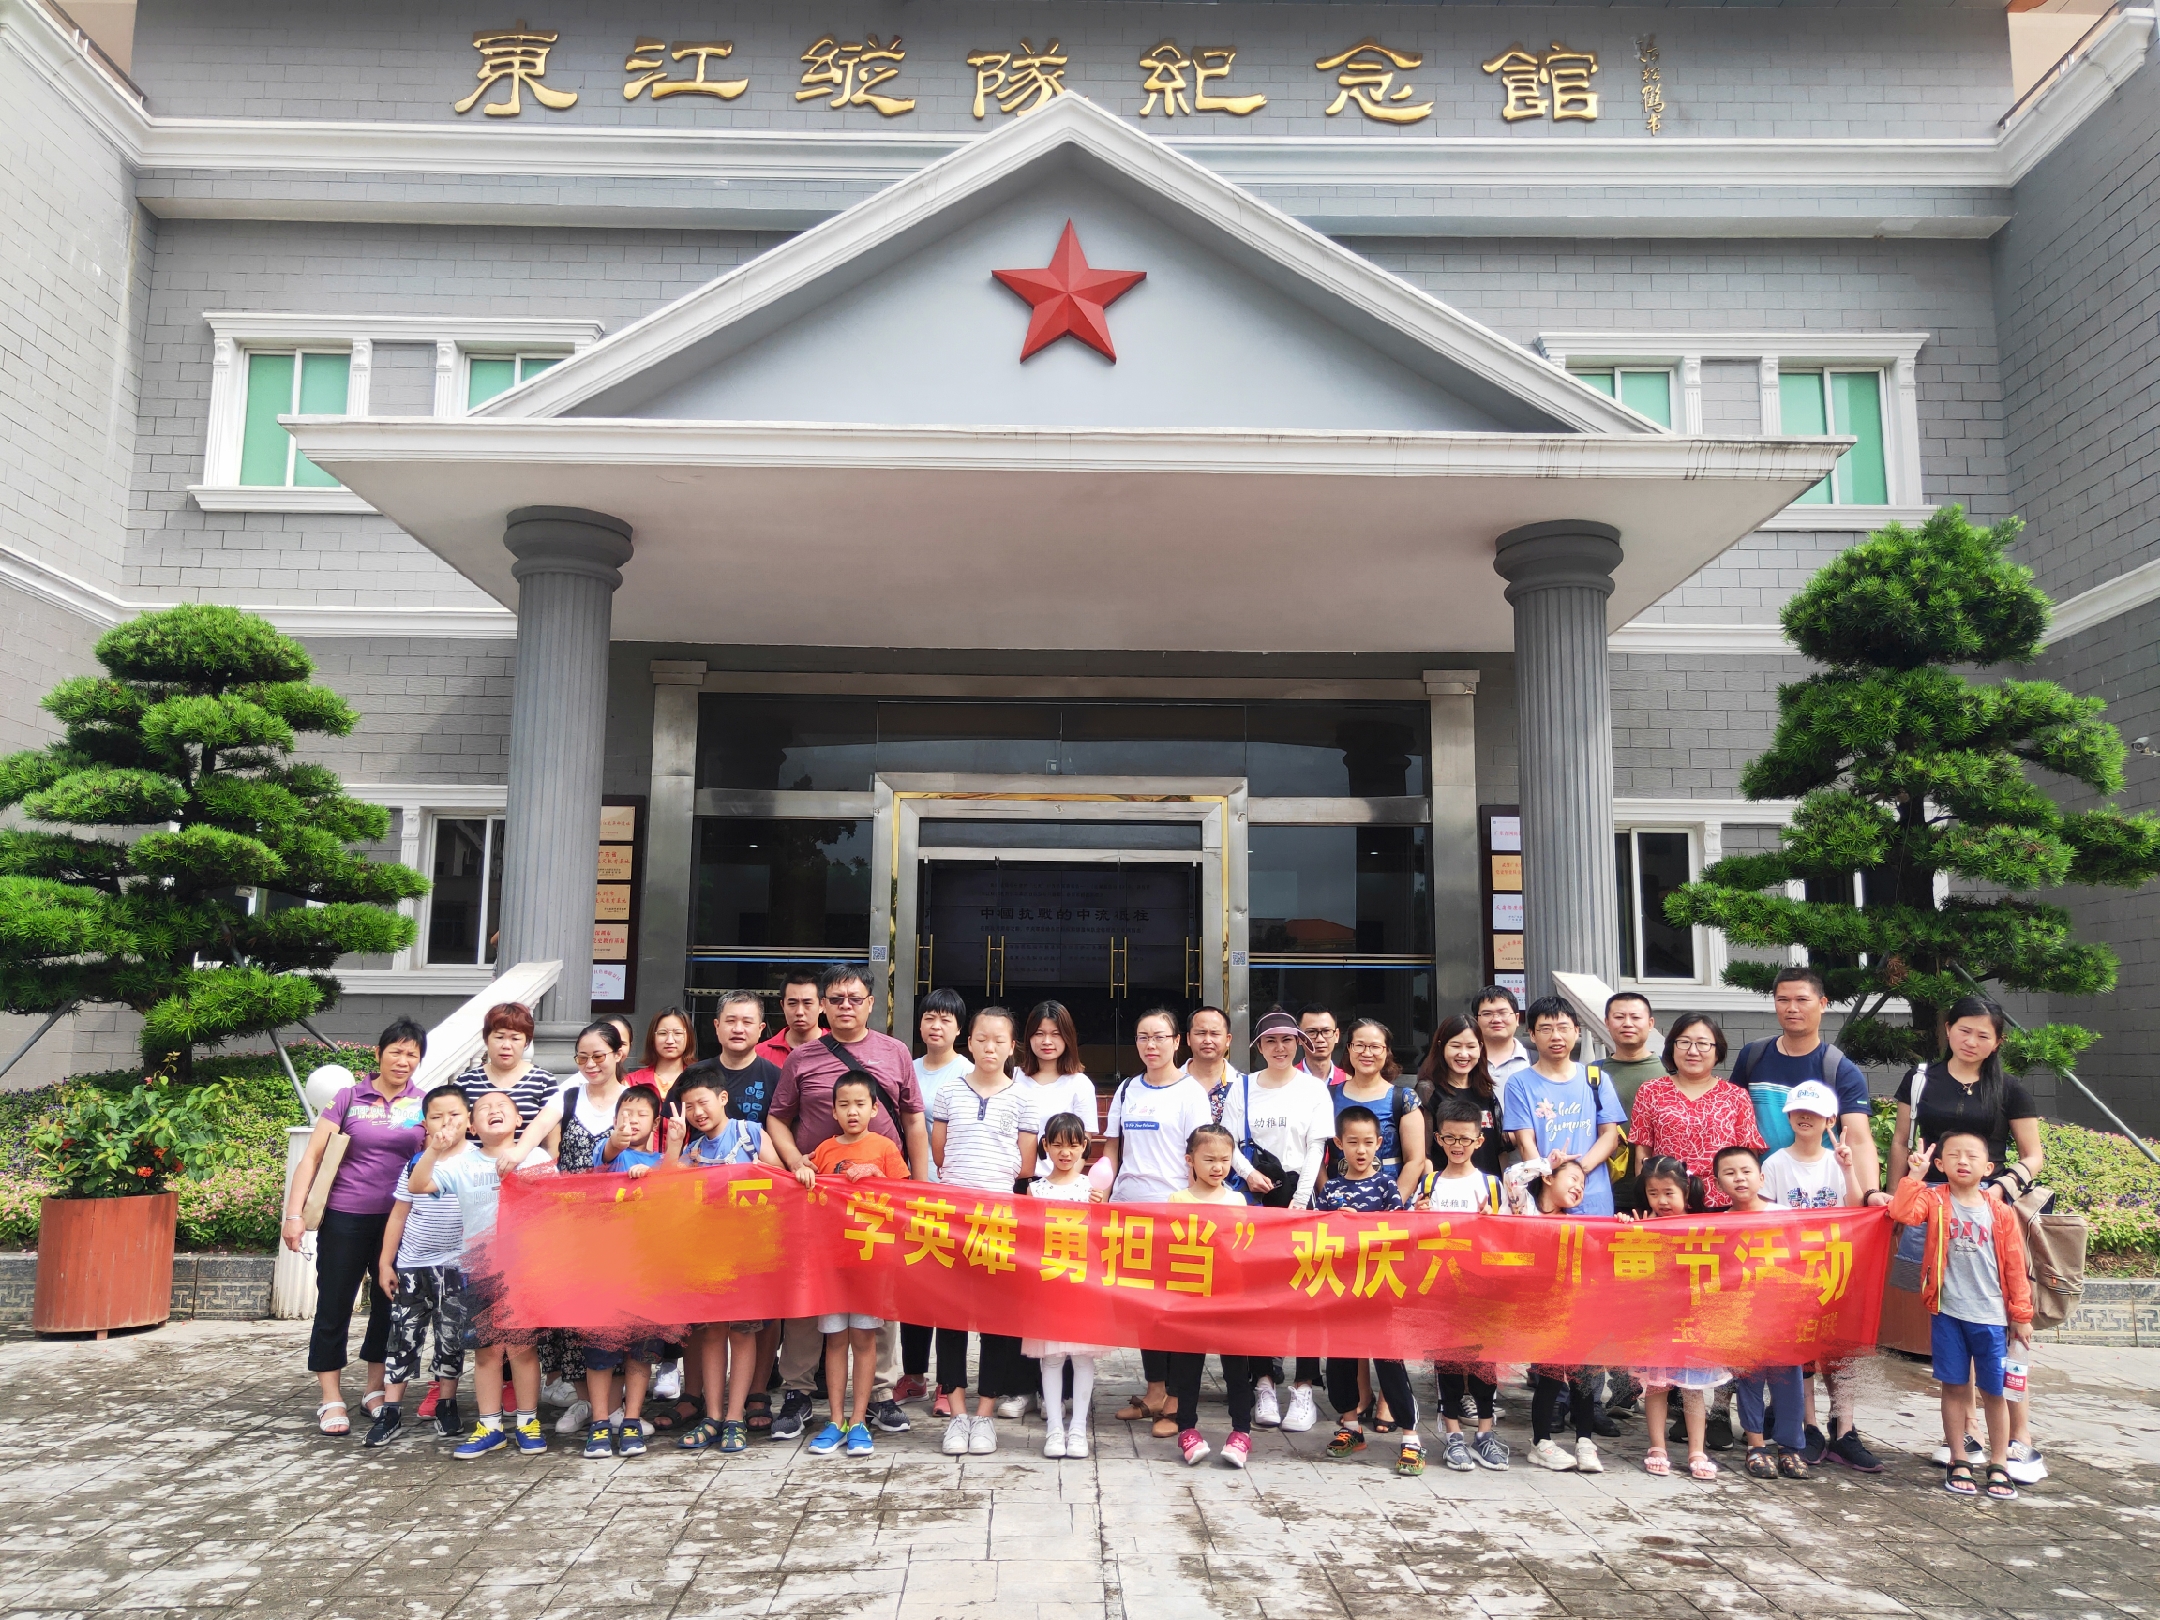 深圳市某社区“学英雄 勇担当”红色教育活动